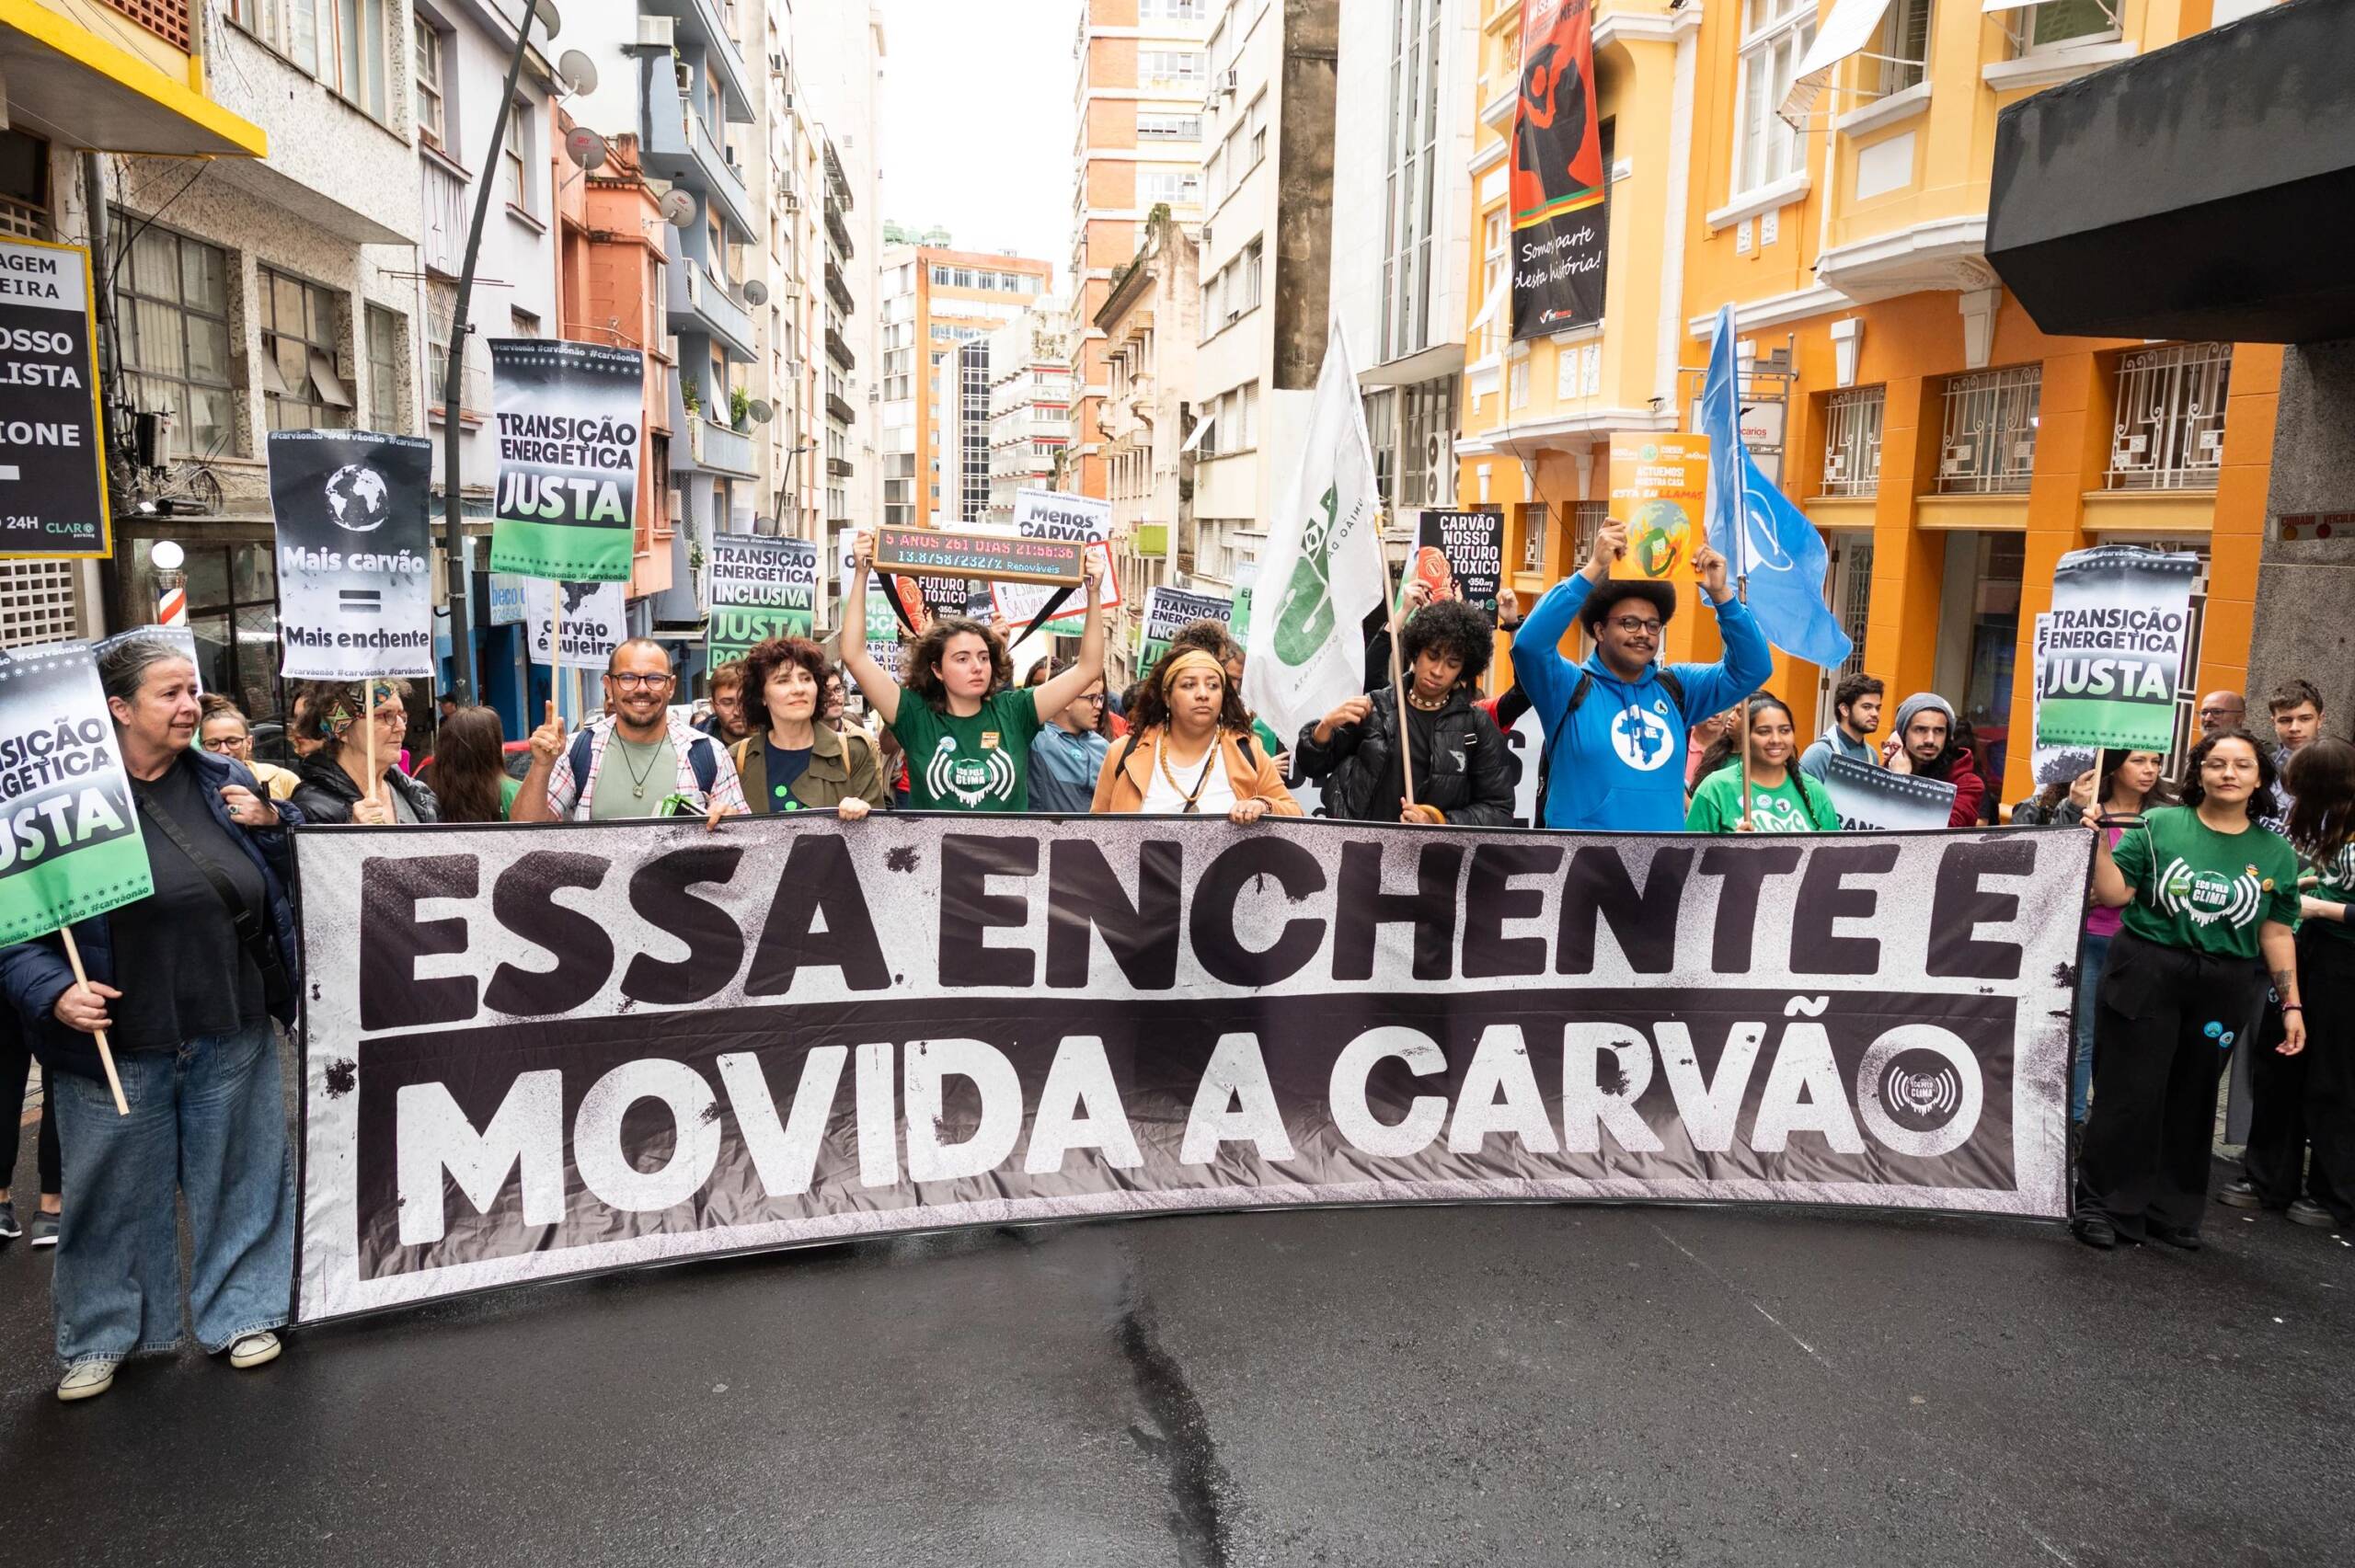 Porto Alegre, Brasilien, 3.11.: Aktivist*innen marschieren mit einem Banner. Sie fordern ein "Klimanotstandsdekret". Im Süden Brasiliens haben kürzlich 3 tropische Wirbelstürme Dutzende Opfer gefordert. Bildnachweis: Andrea Graiz